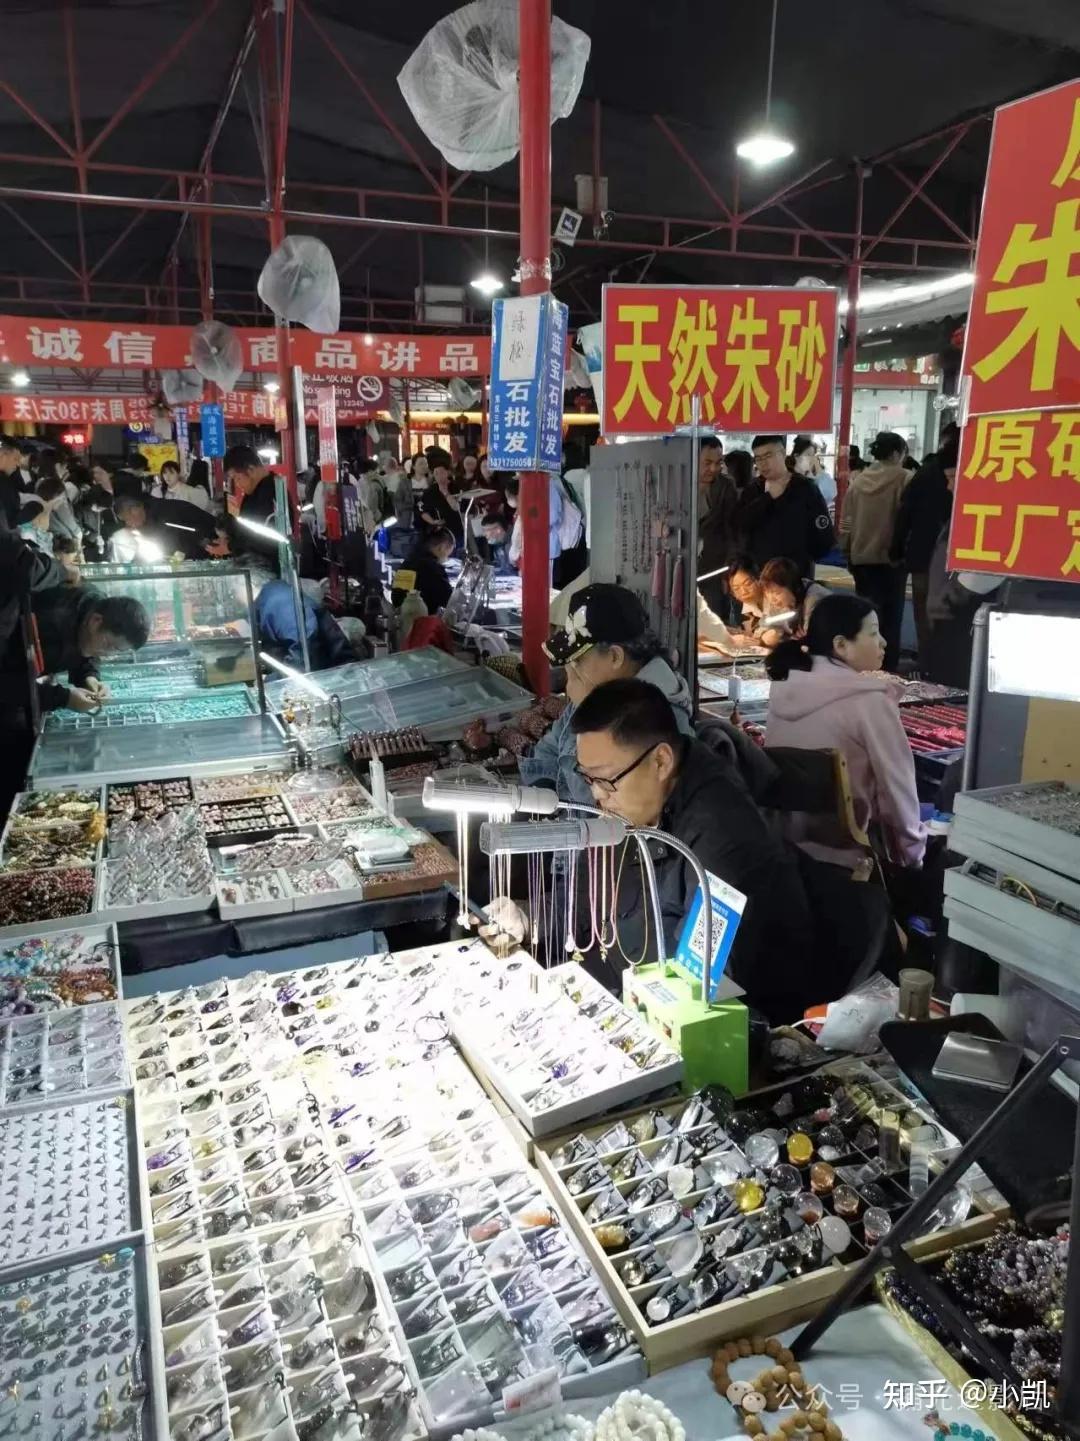 服饰容器雕像皮影扇子古籍字画潘家园旧货市场是北京最便宜的旧货市场